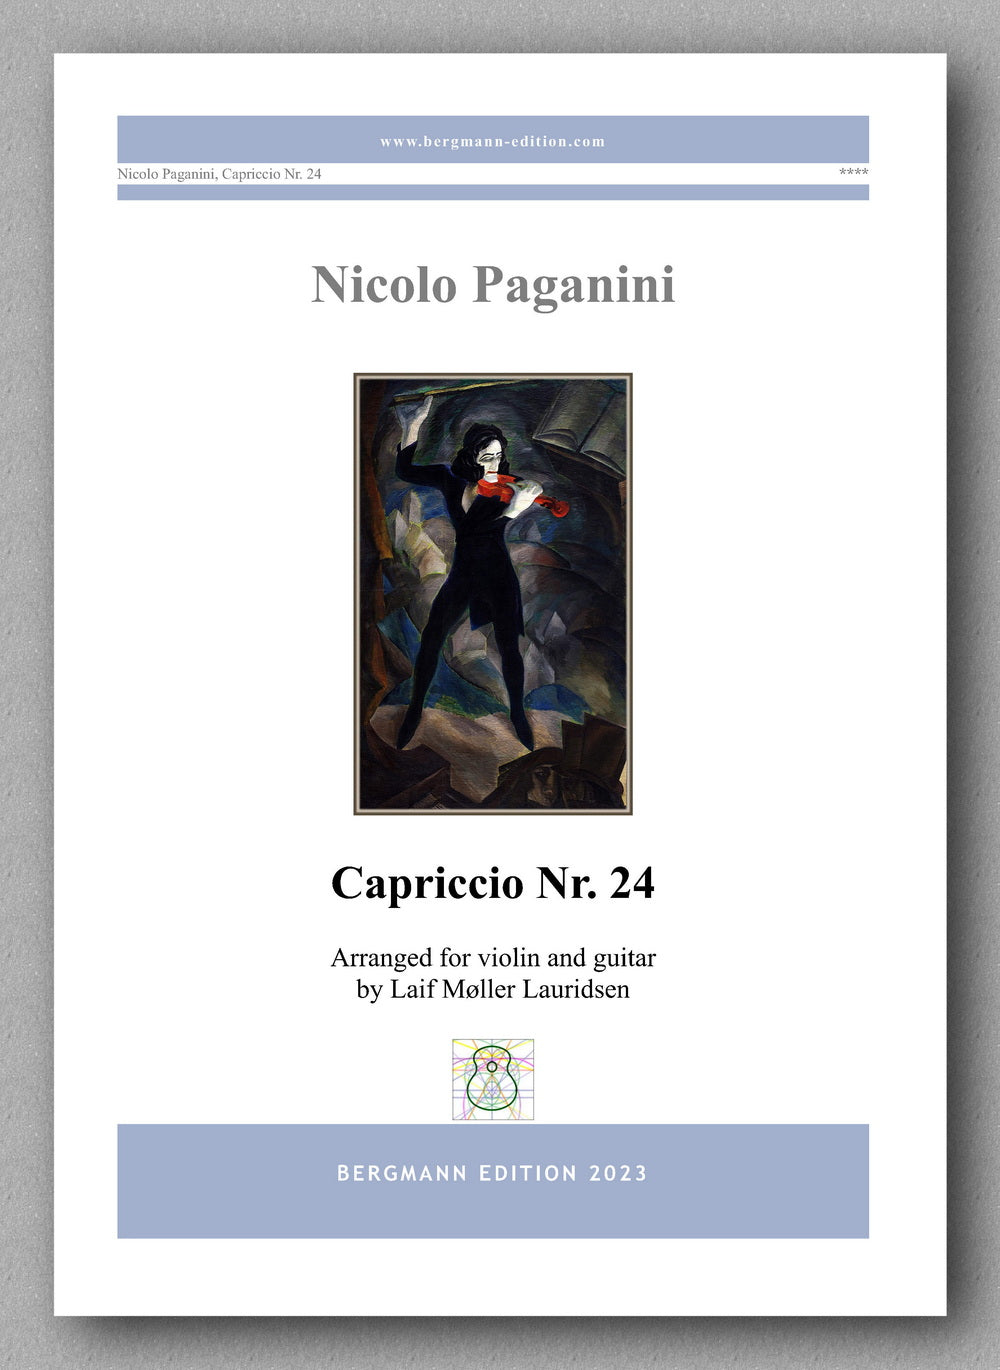 Nicolo Paganini, Capriccio Nr. 24 - preview of the cover